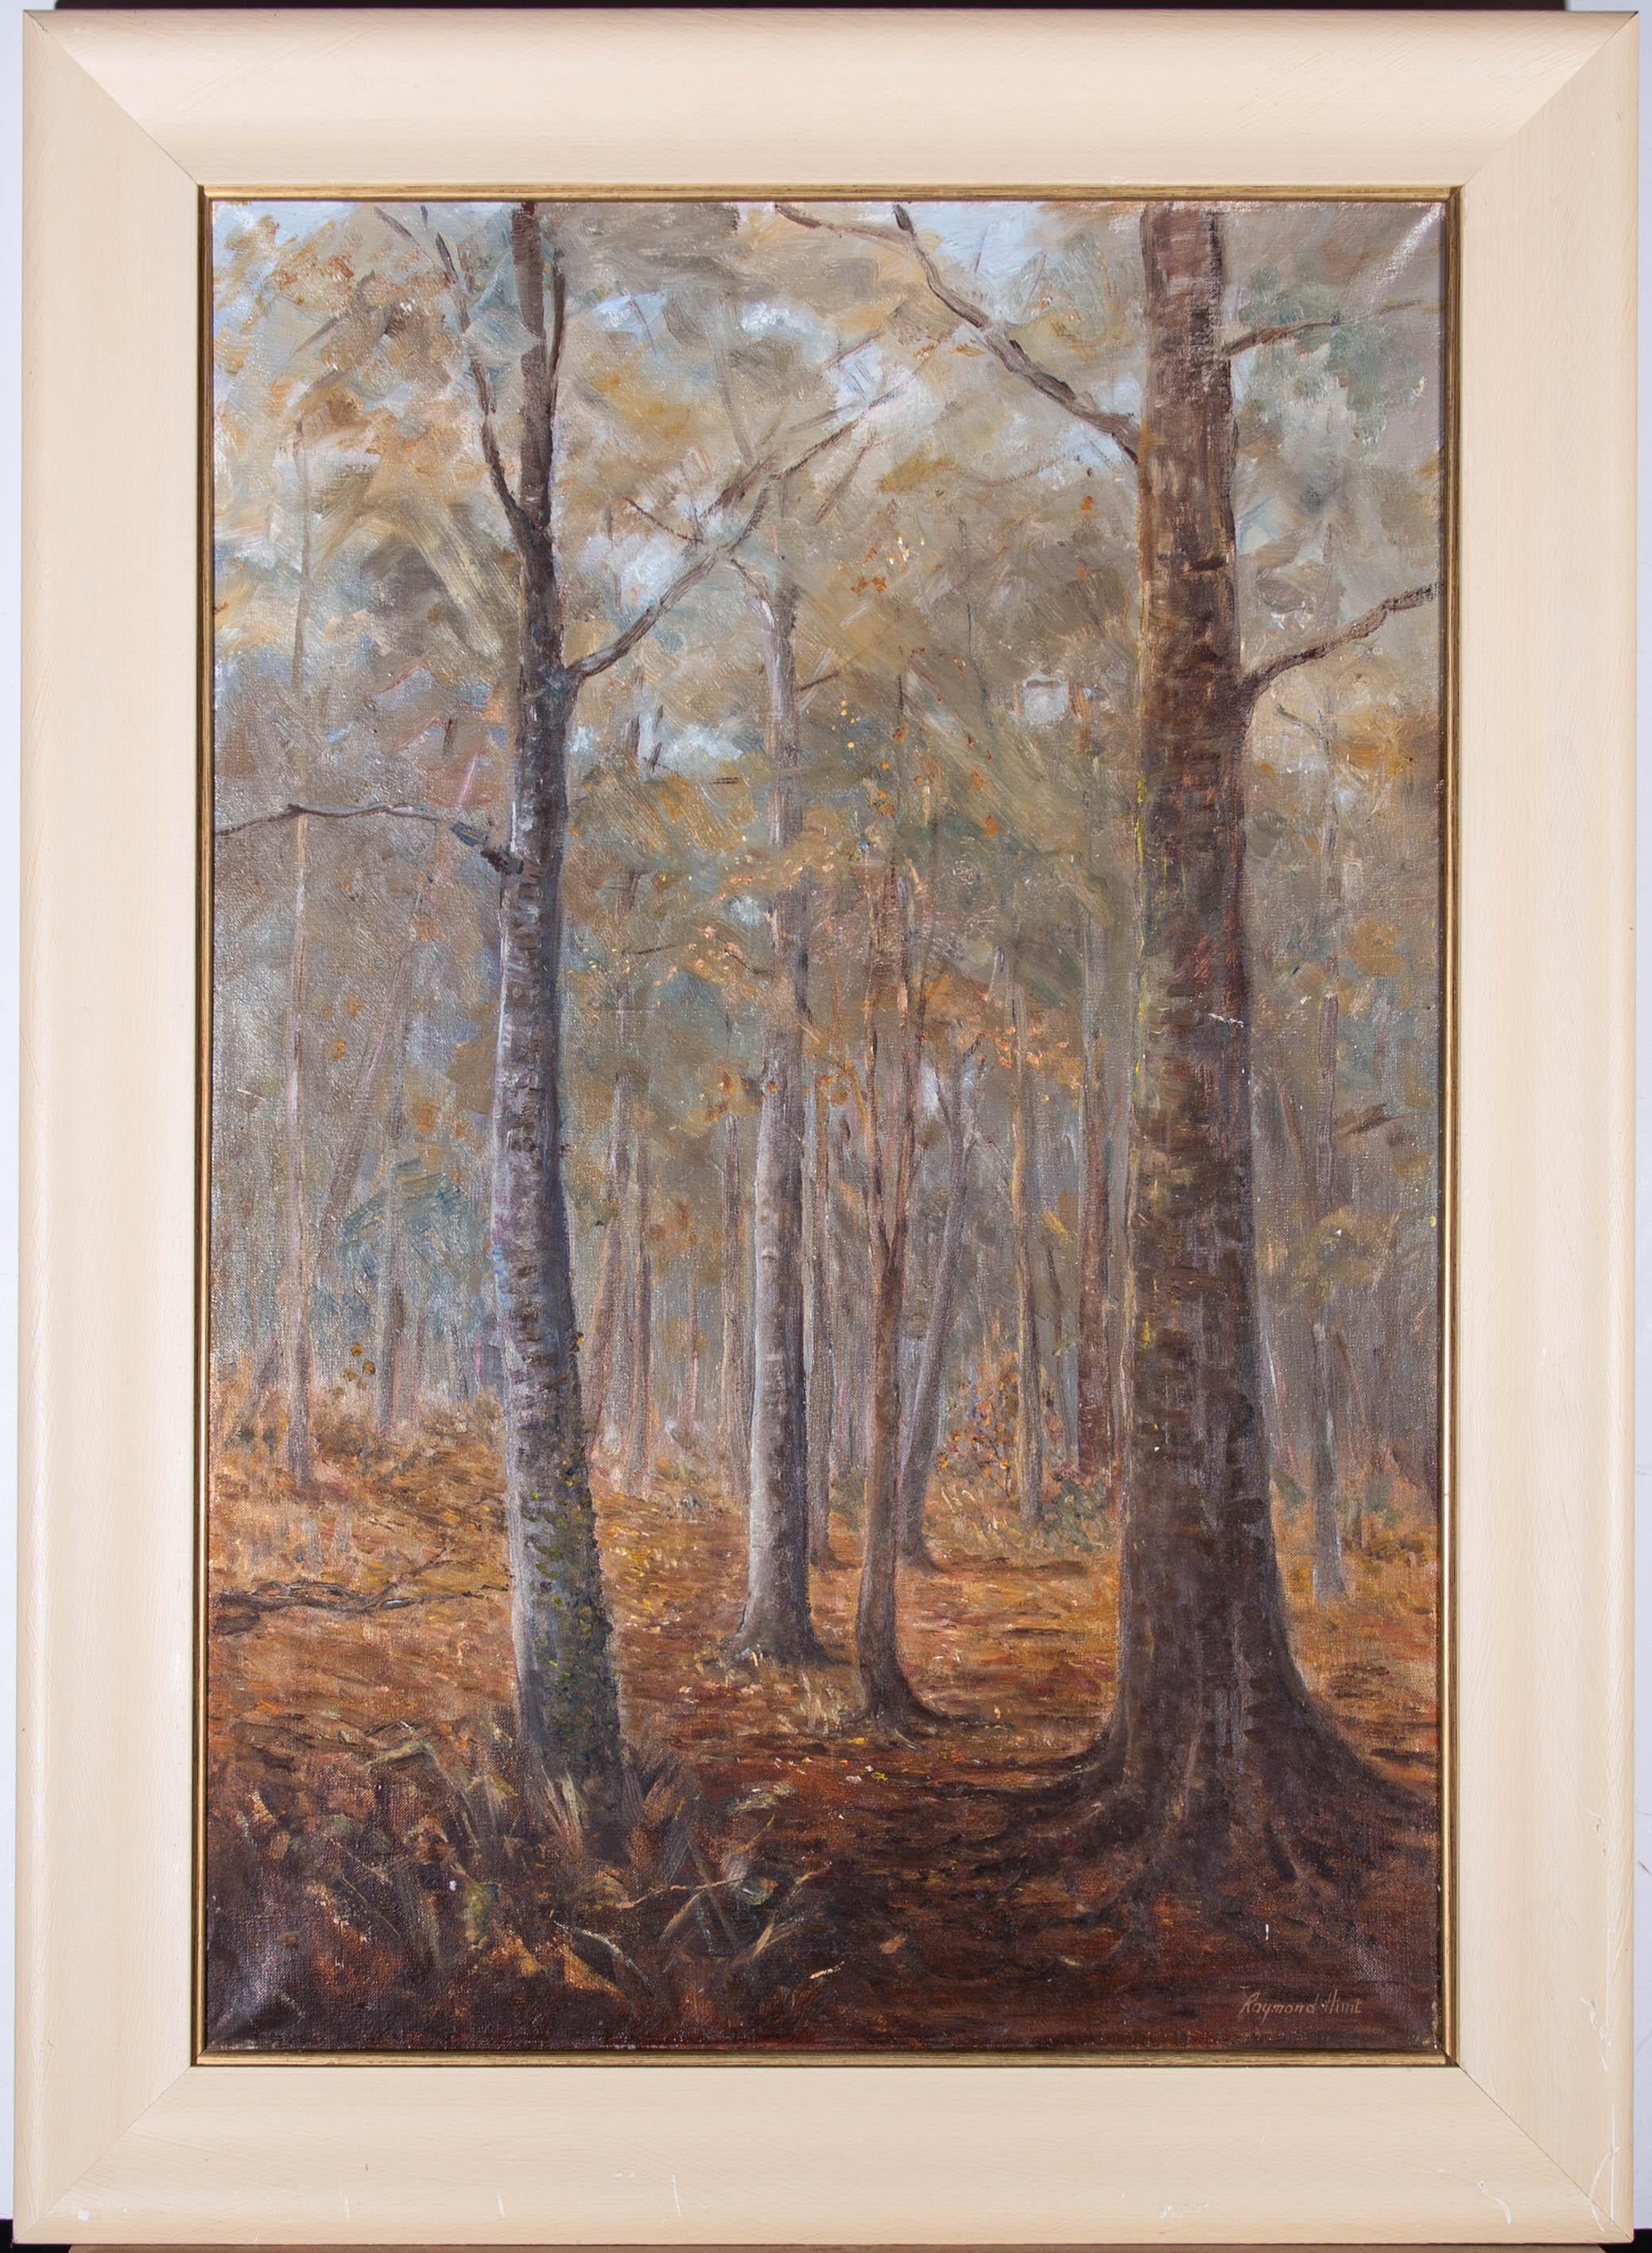 Eine stimmungsvolle Waldszene, die die Orange- und Brauntöne des Waldbodens im Herbst zeigt. Der Künstler hat unten rechts signiert, und das Gemälde wird in einem einfachen zeitgenössischen Rahmen mit dünnem vergoldetem Innenfenster präsentiert. Auf